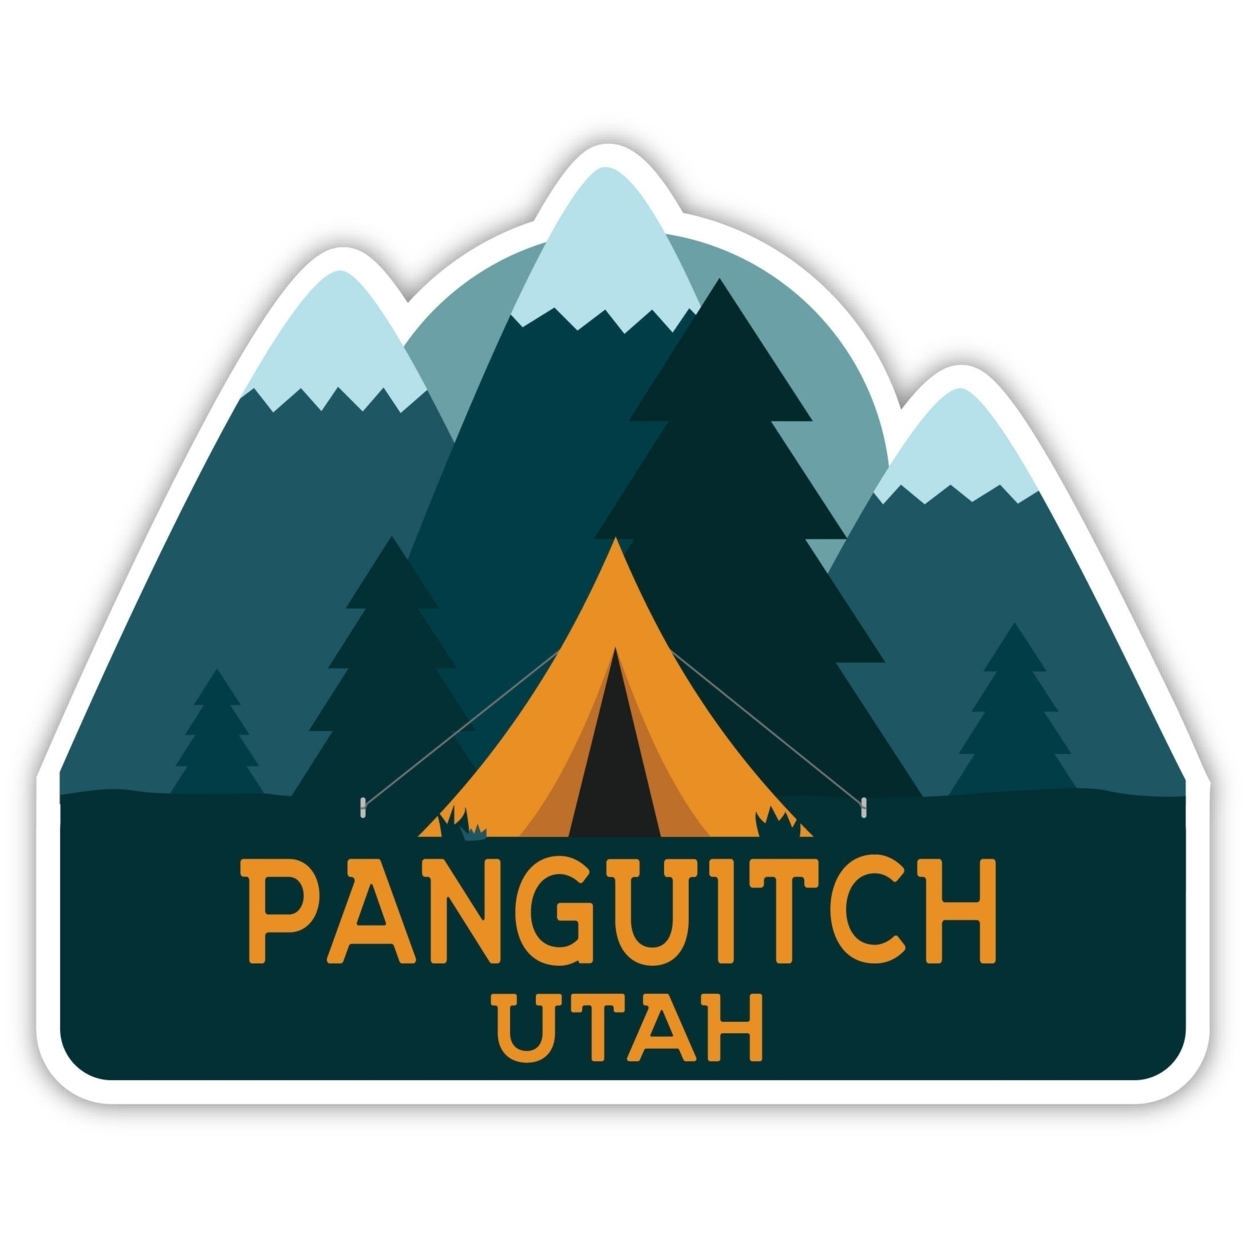 Panguitch Utah Souvenir Decorative Stickers (Choose Theme And Size) - Single Unit, 2-Inch, Tent